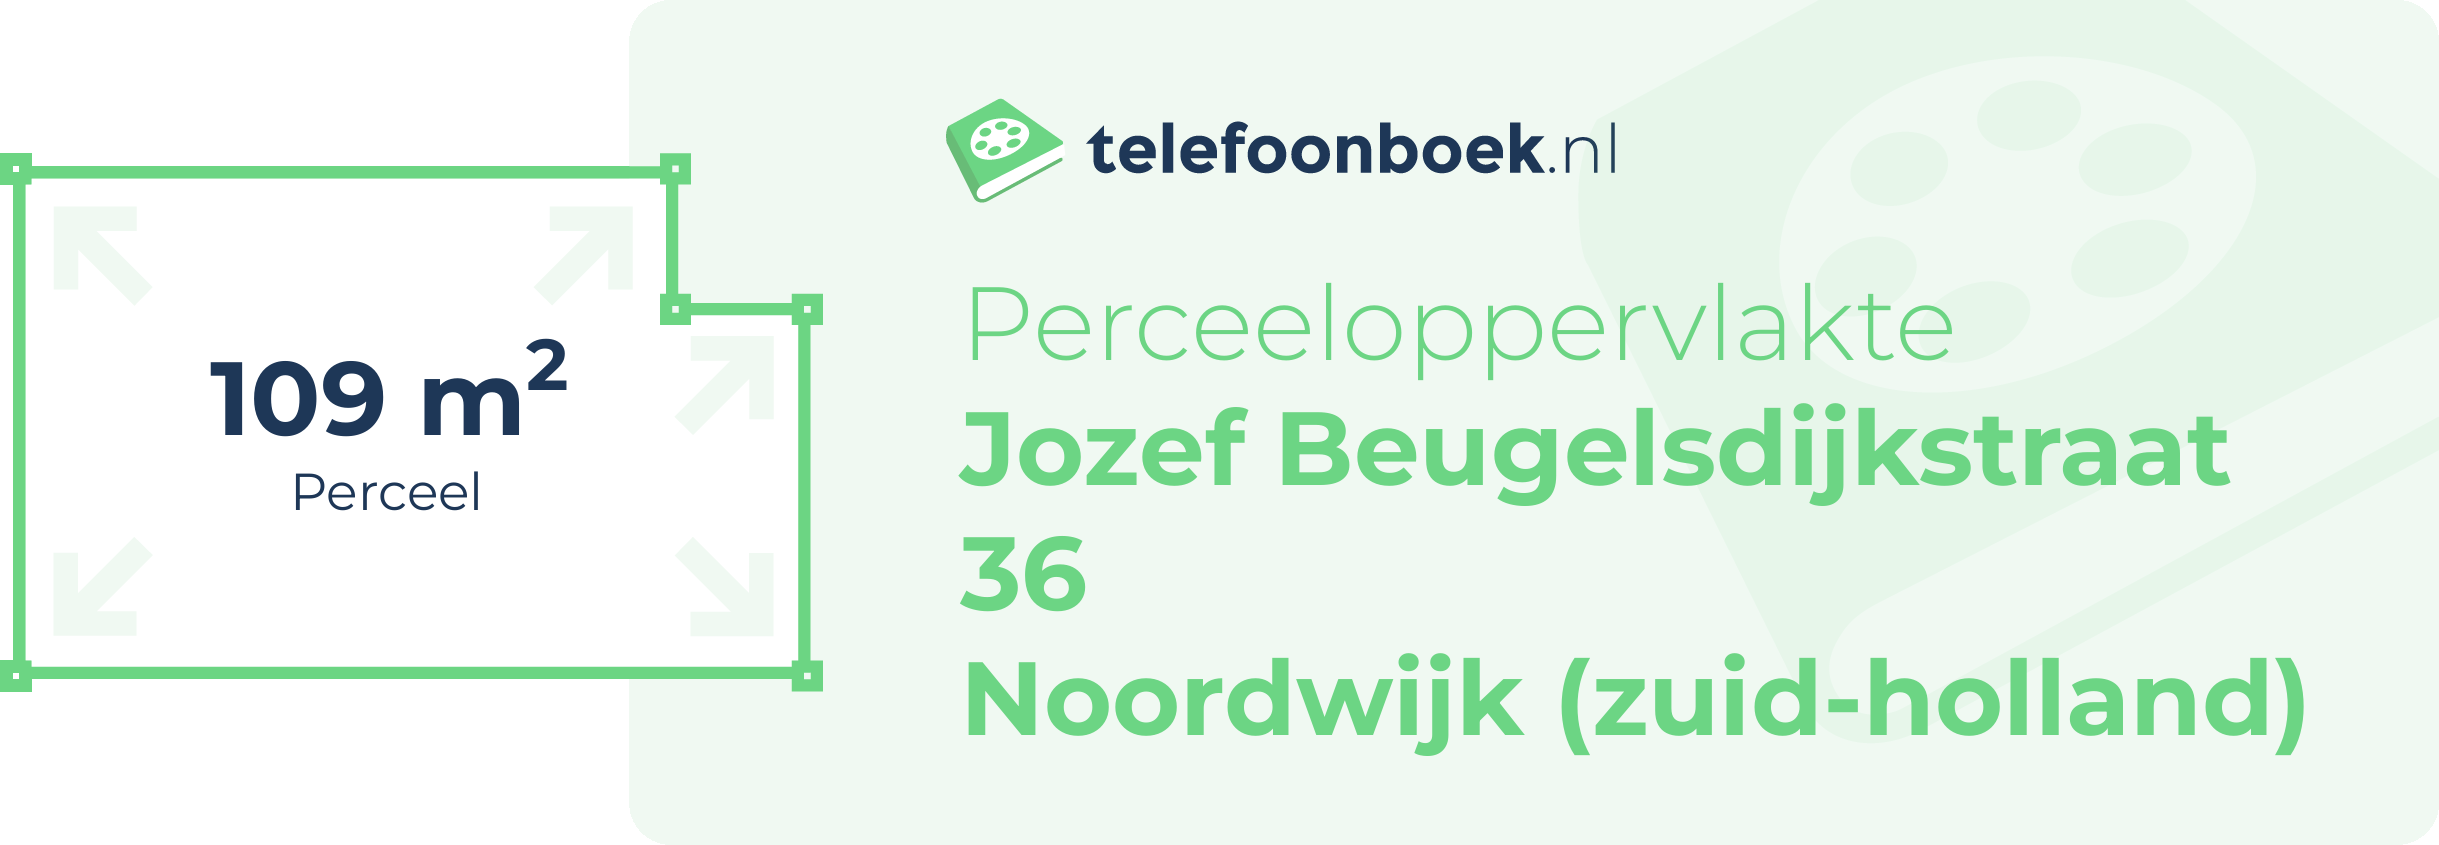 Perceeloppervlakte Jozef Beugelsdijkstraat 36 Noordwijk (Zuid-Holland)